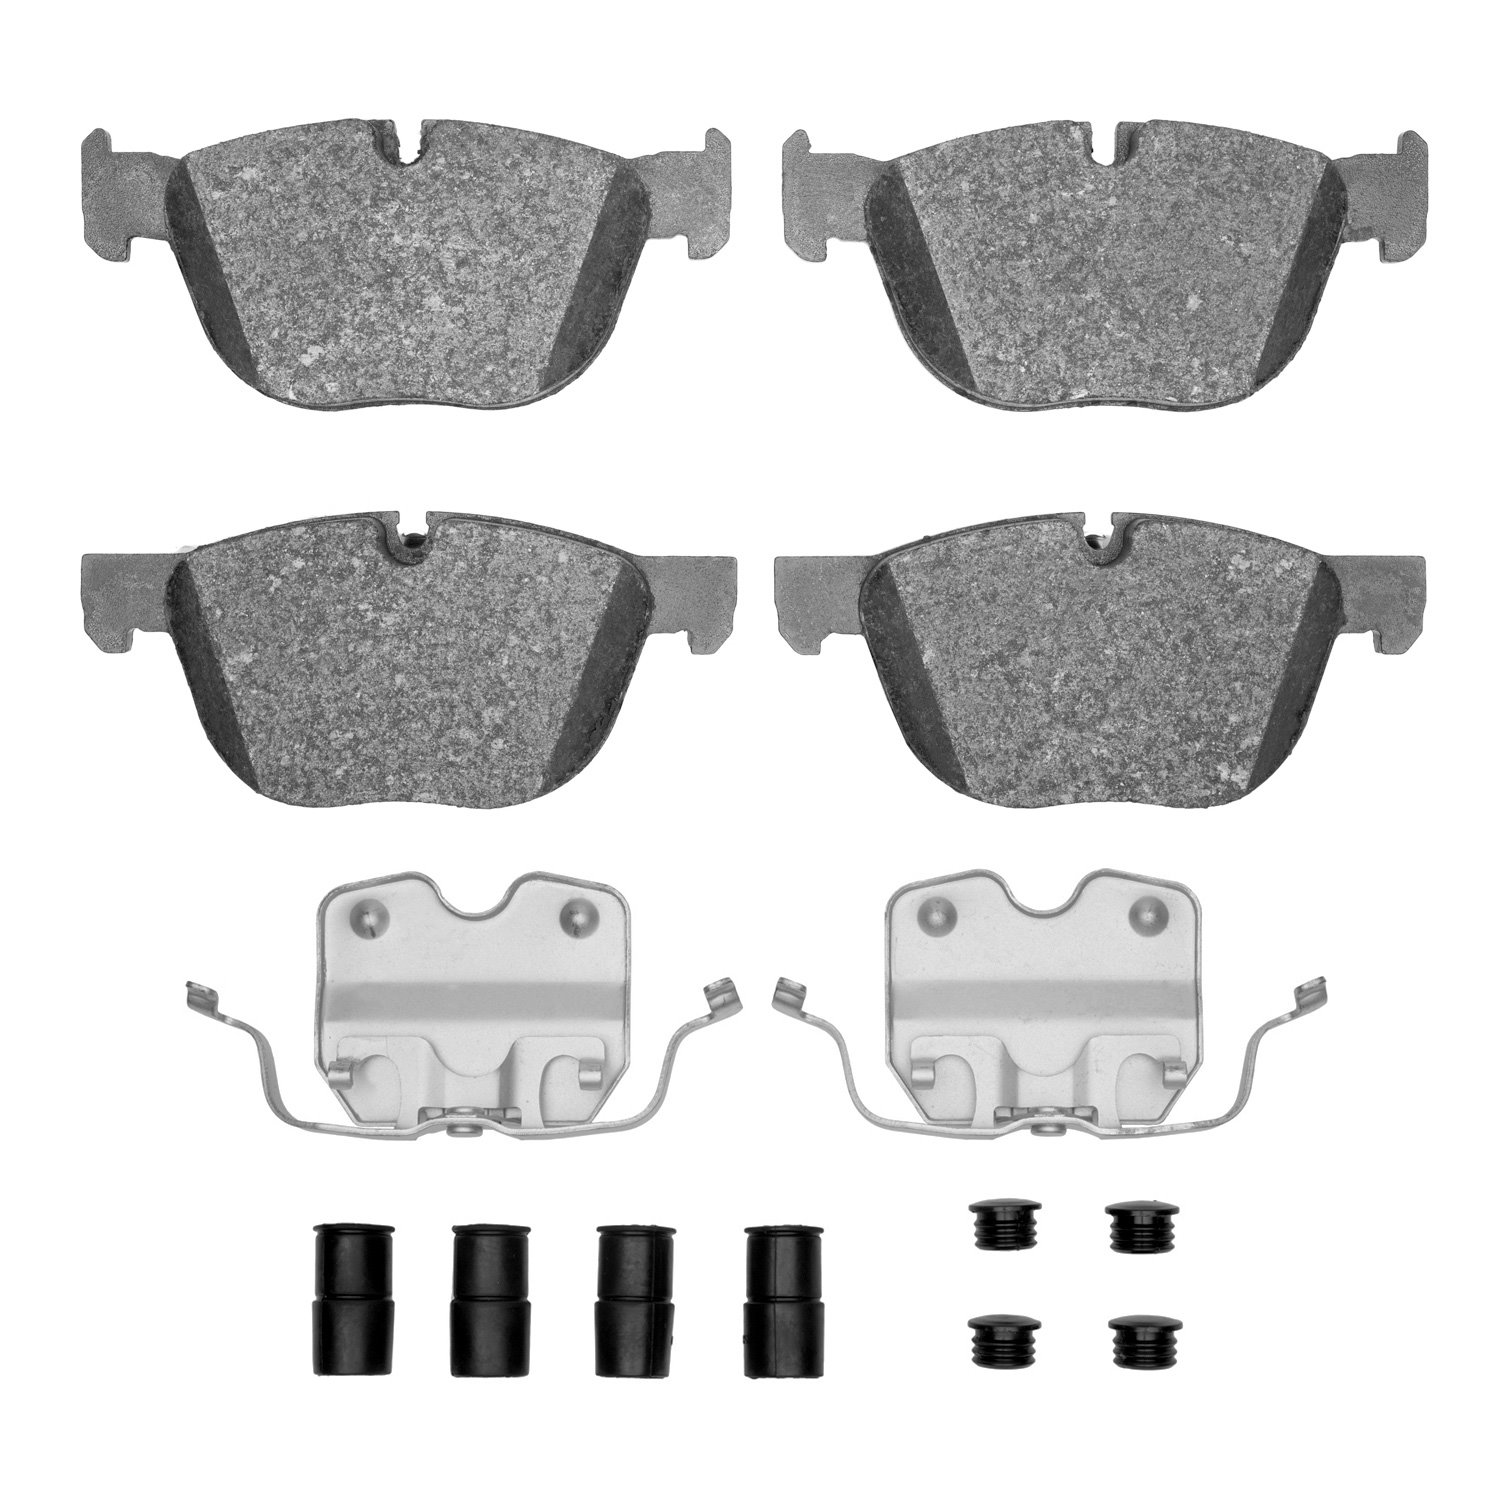 Ceramic Brake Pads & Hardware Kit, 2007-2019 BMW, Position: Front